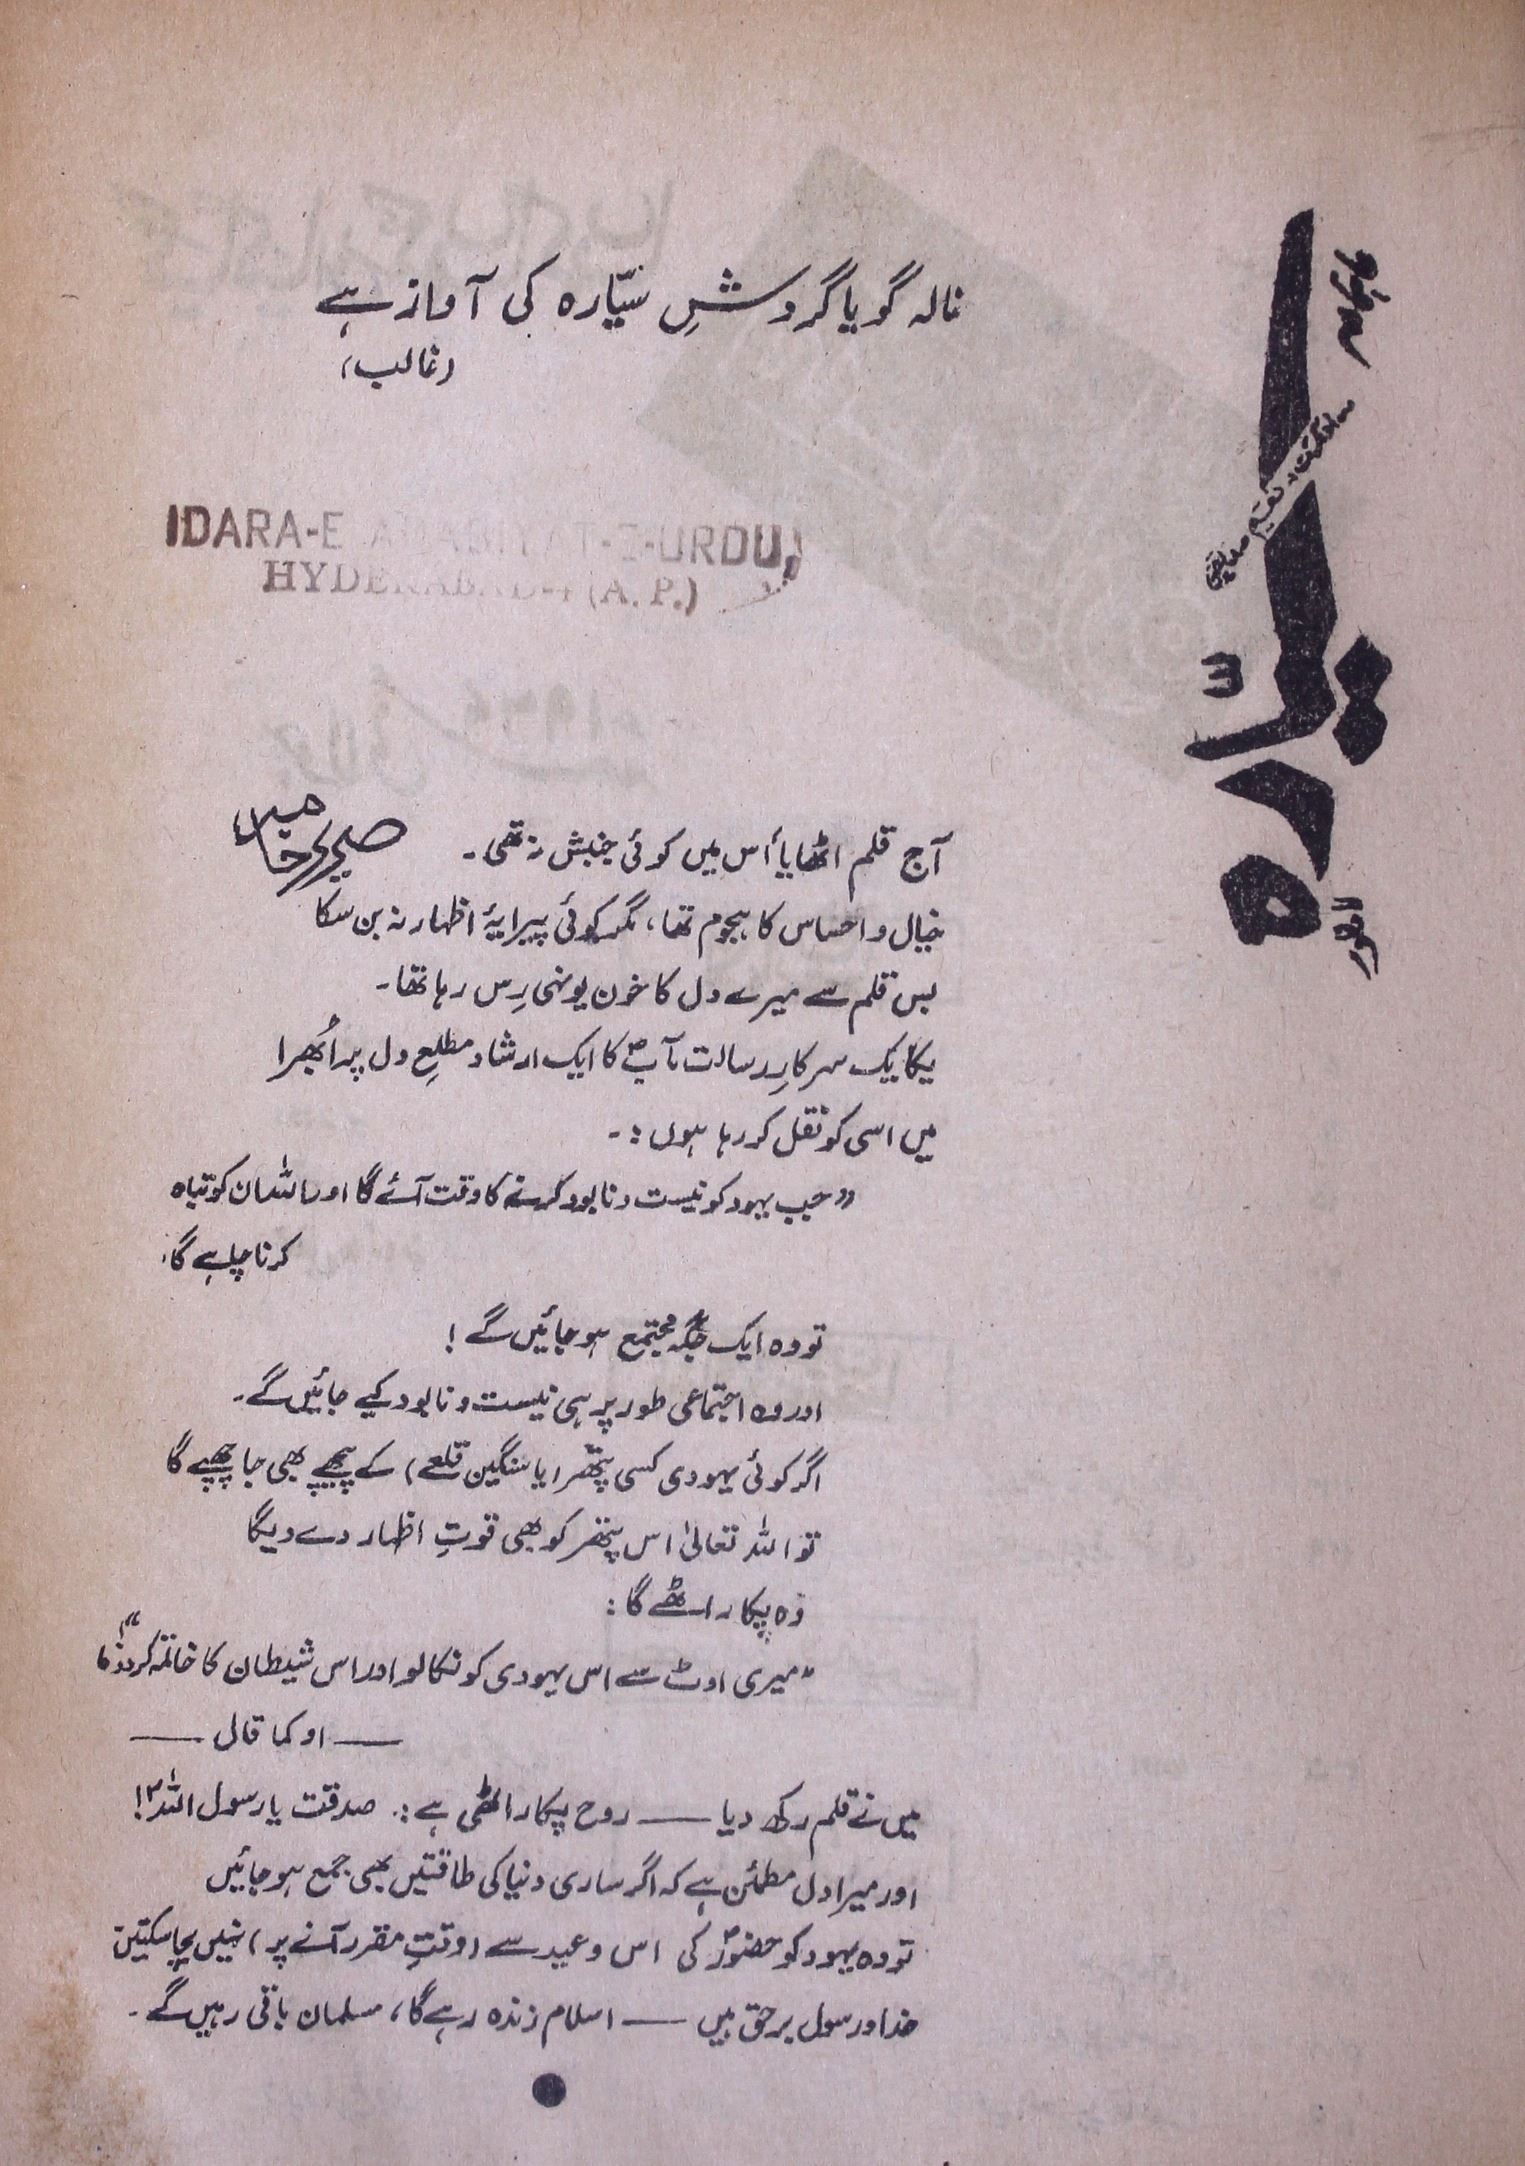 Sayyara Jild 11 Sh. 1 July 1967